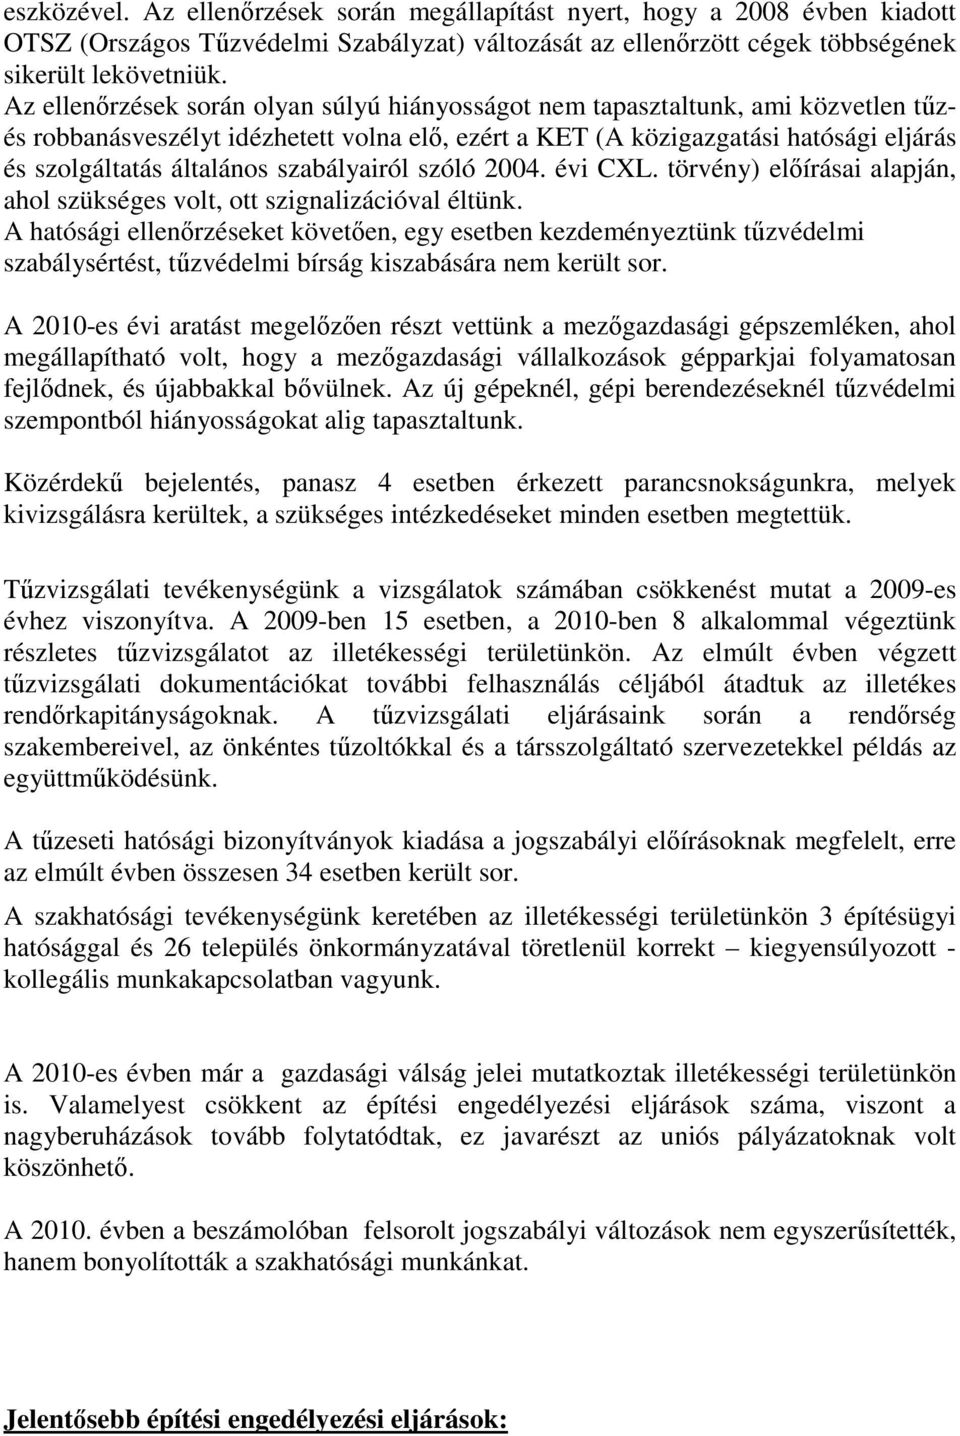 szabályairól szóló 2004. évi CXL. törvény) elıírásai alapján, ahol szükséges volt, ott szignalizációval éltünk.